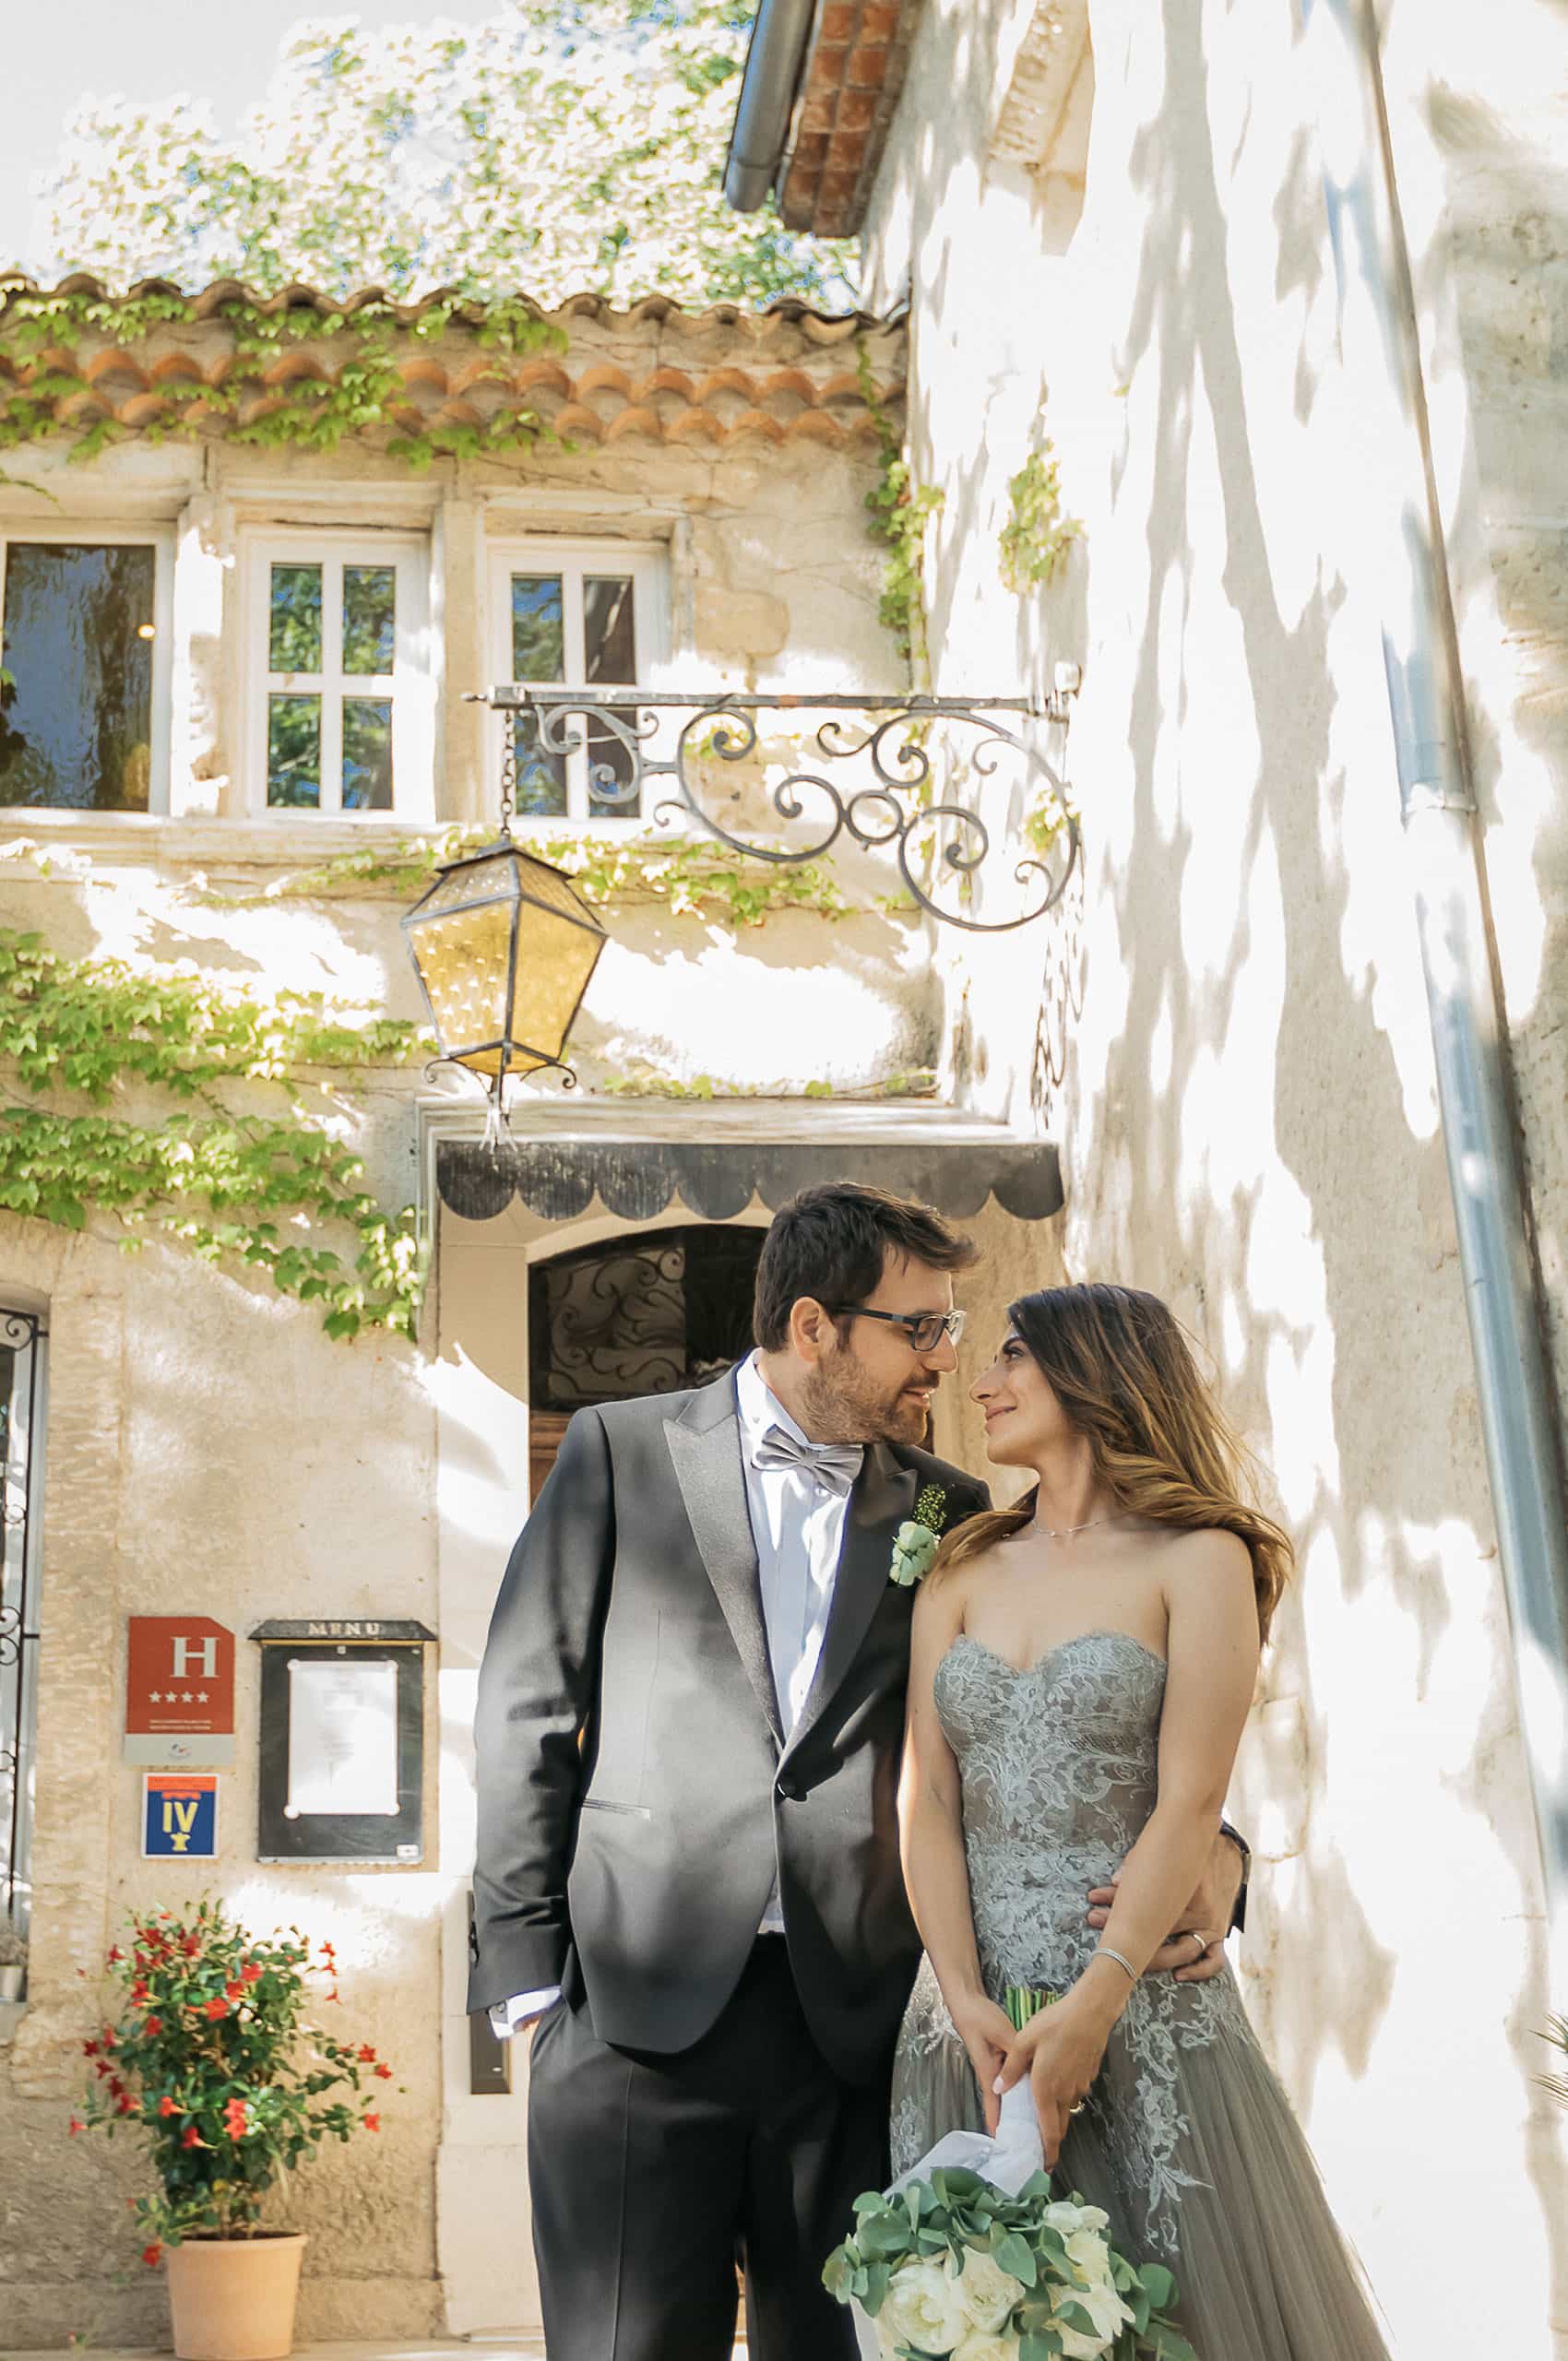 Wedding at Aix en Provence